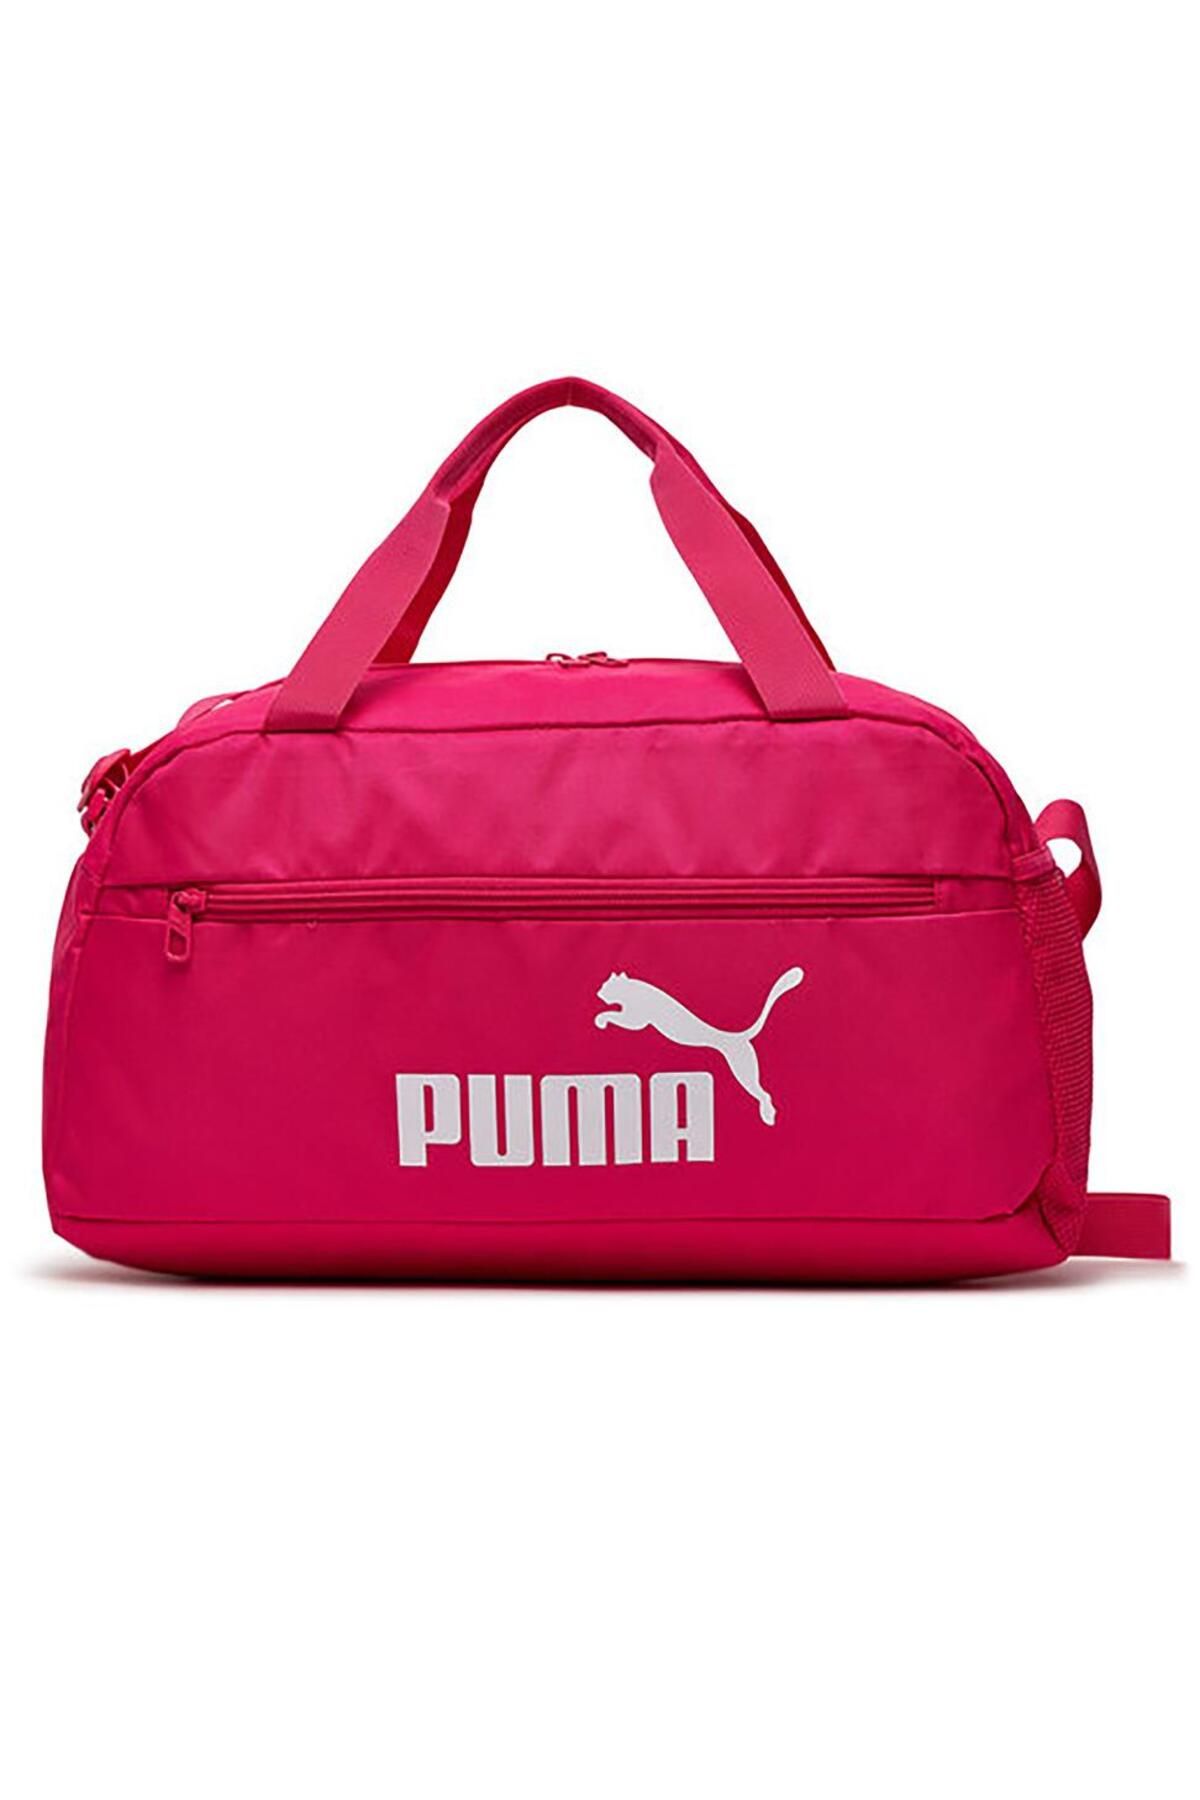 Puma Phase Kadın Pembe Spor Çanta (079949-11)